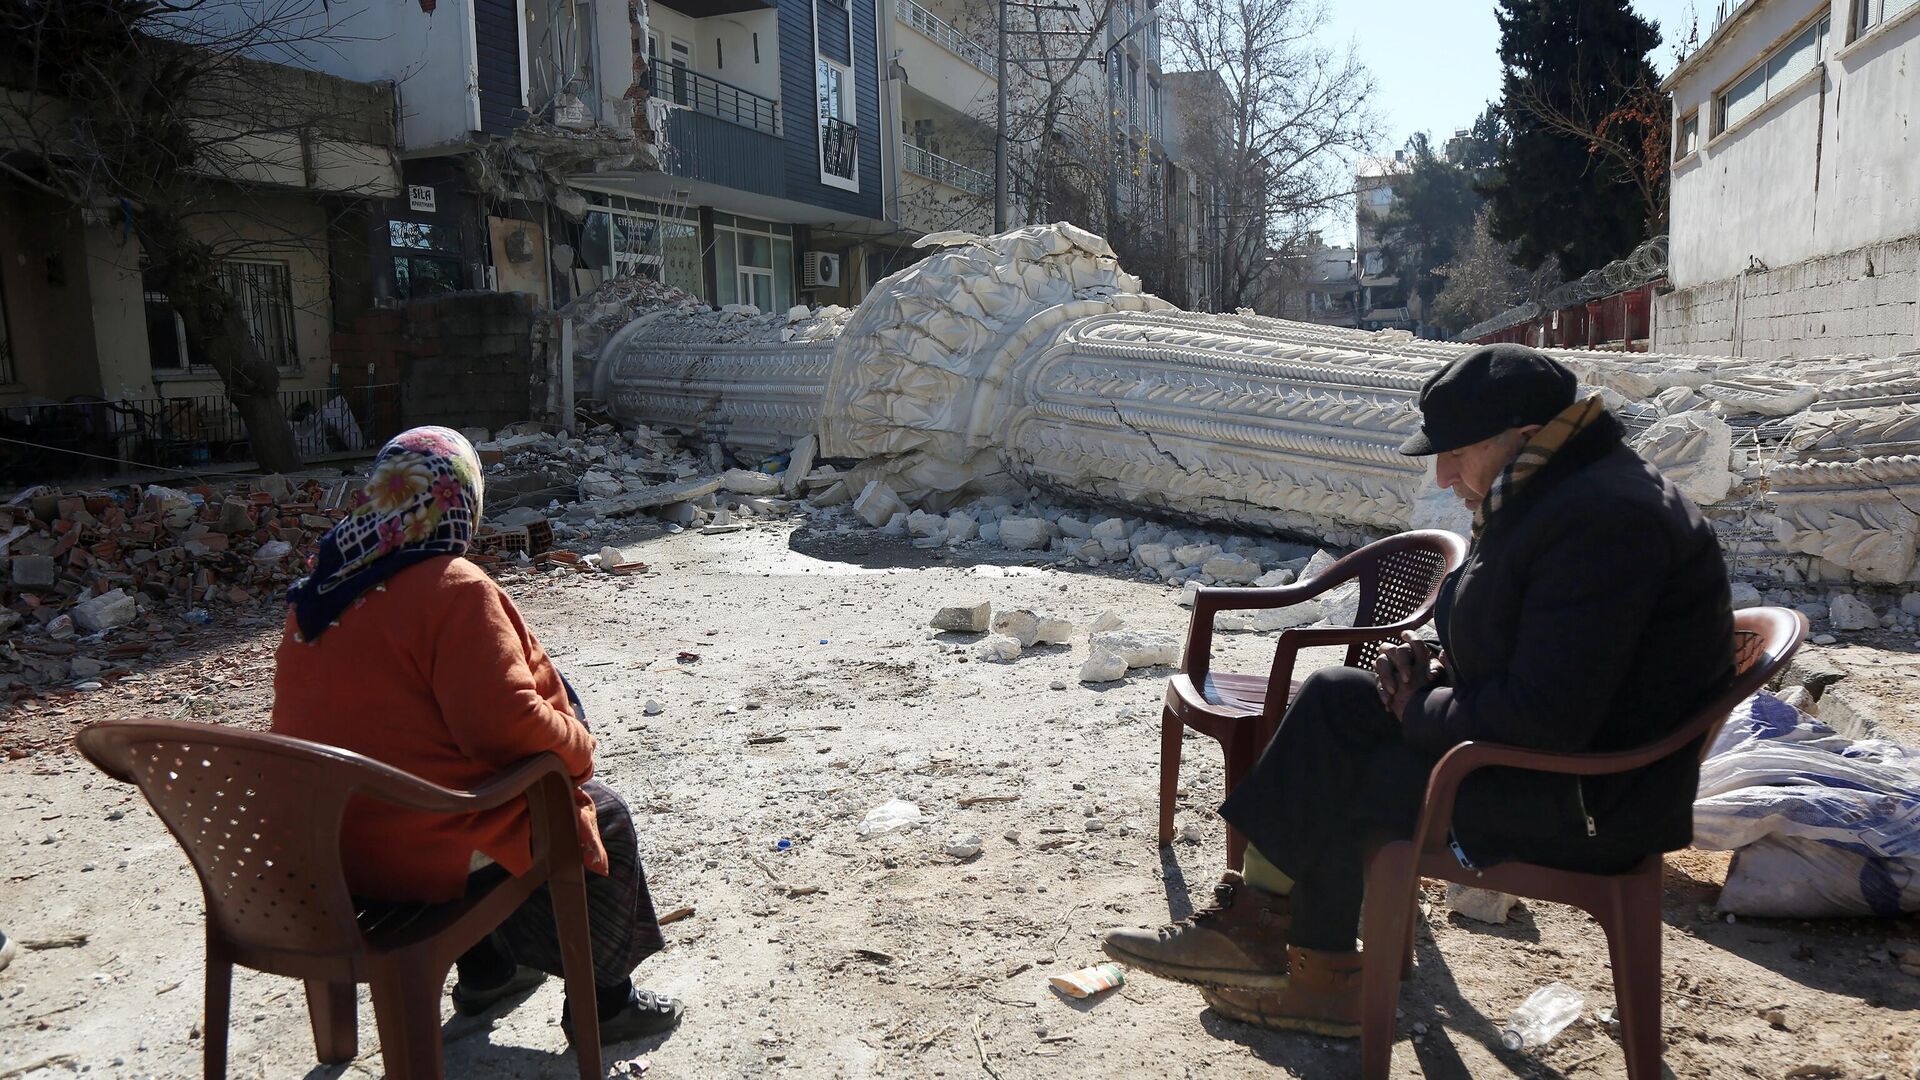 Жители на улице пострадавшего от землетрясения турецкого города Адыямана - РИА Новости, 1920, 13.04.2023